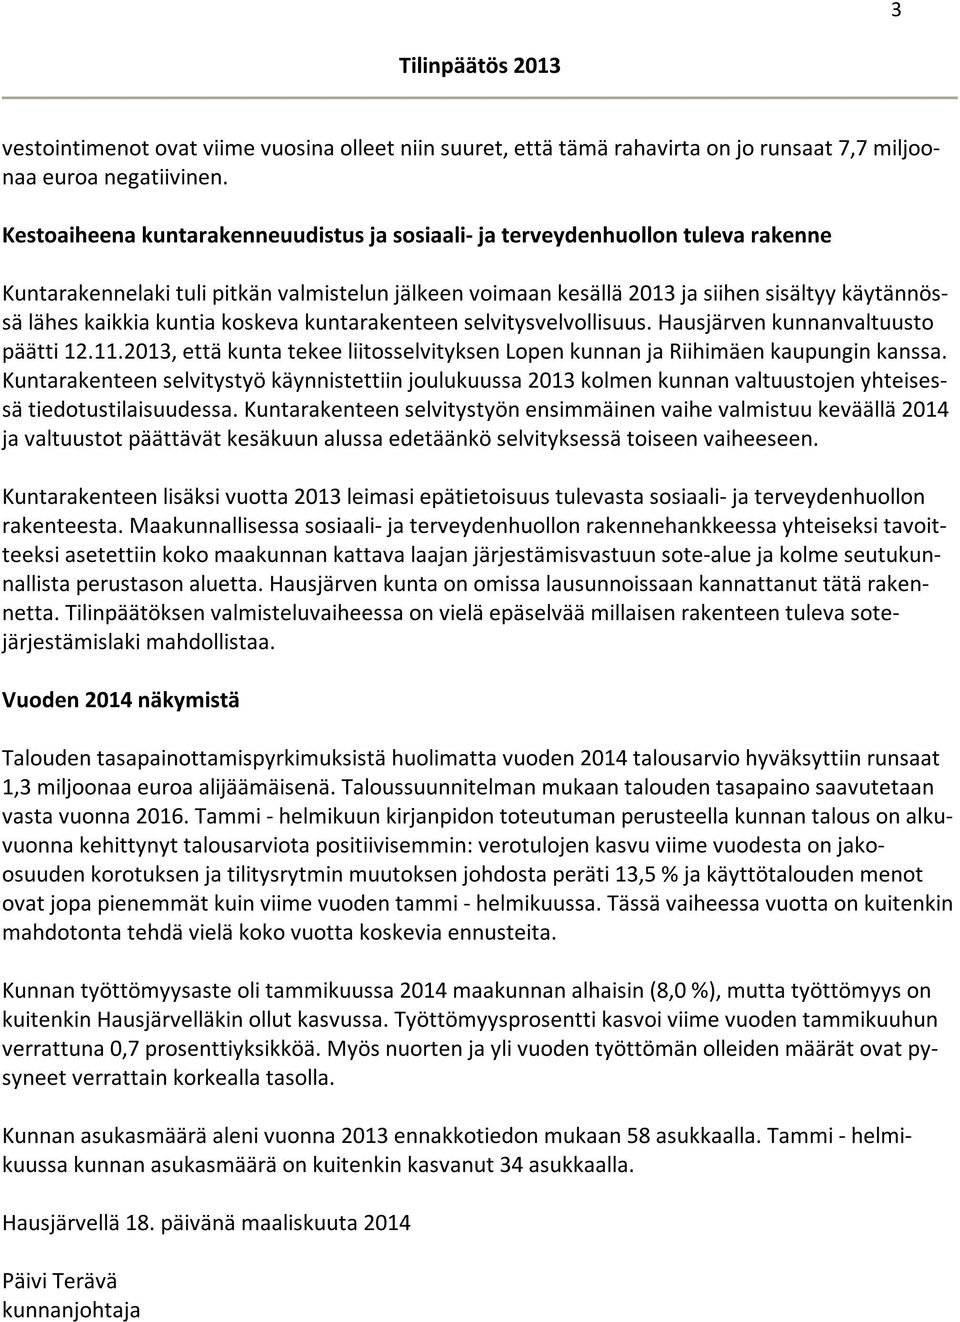 kuntia koskeva kuntarakenteen selvitysvelvollisuus. Hausjärven kunnanvaltuusto päätti 12.11.2013, että kunta tekee liitosselvityksen Lopen kunnan ja Riihimäen kaupungin kanssa.